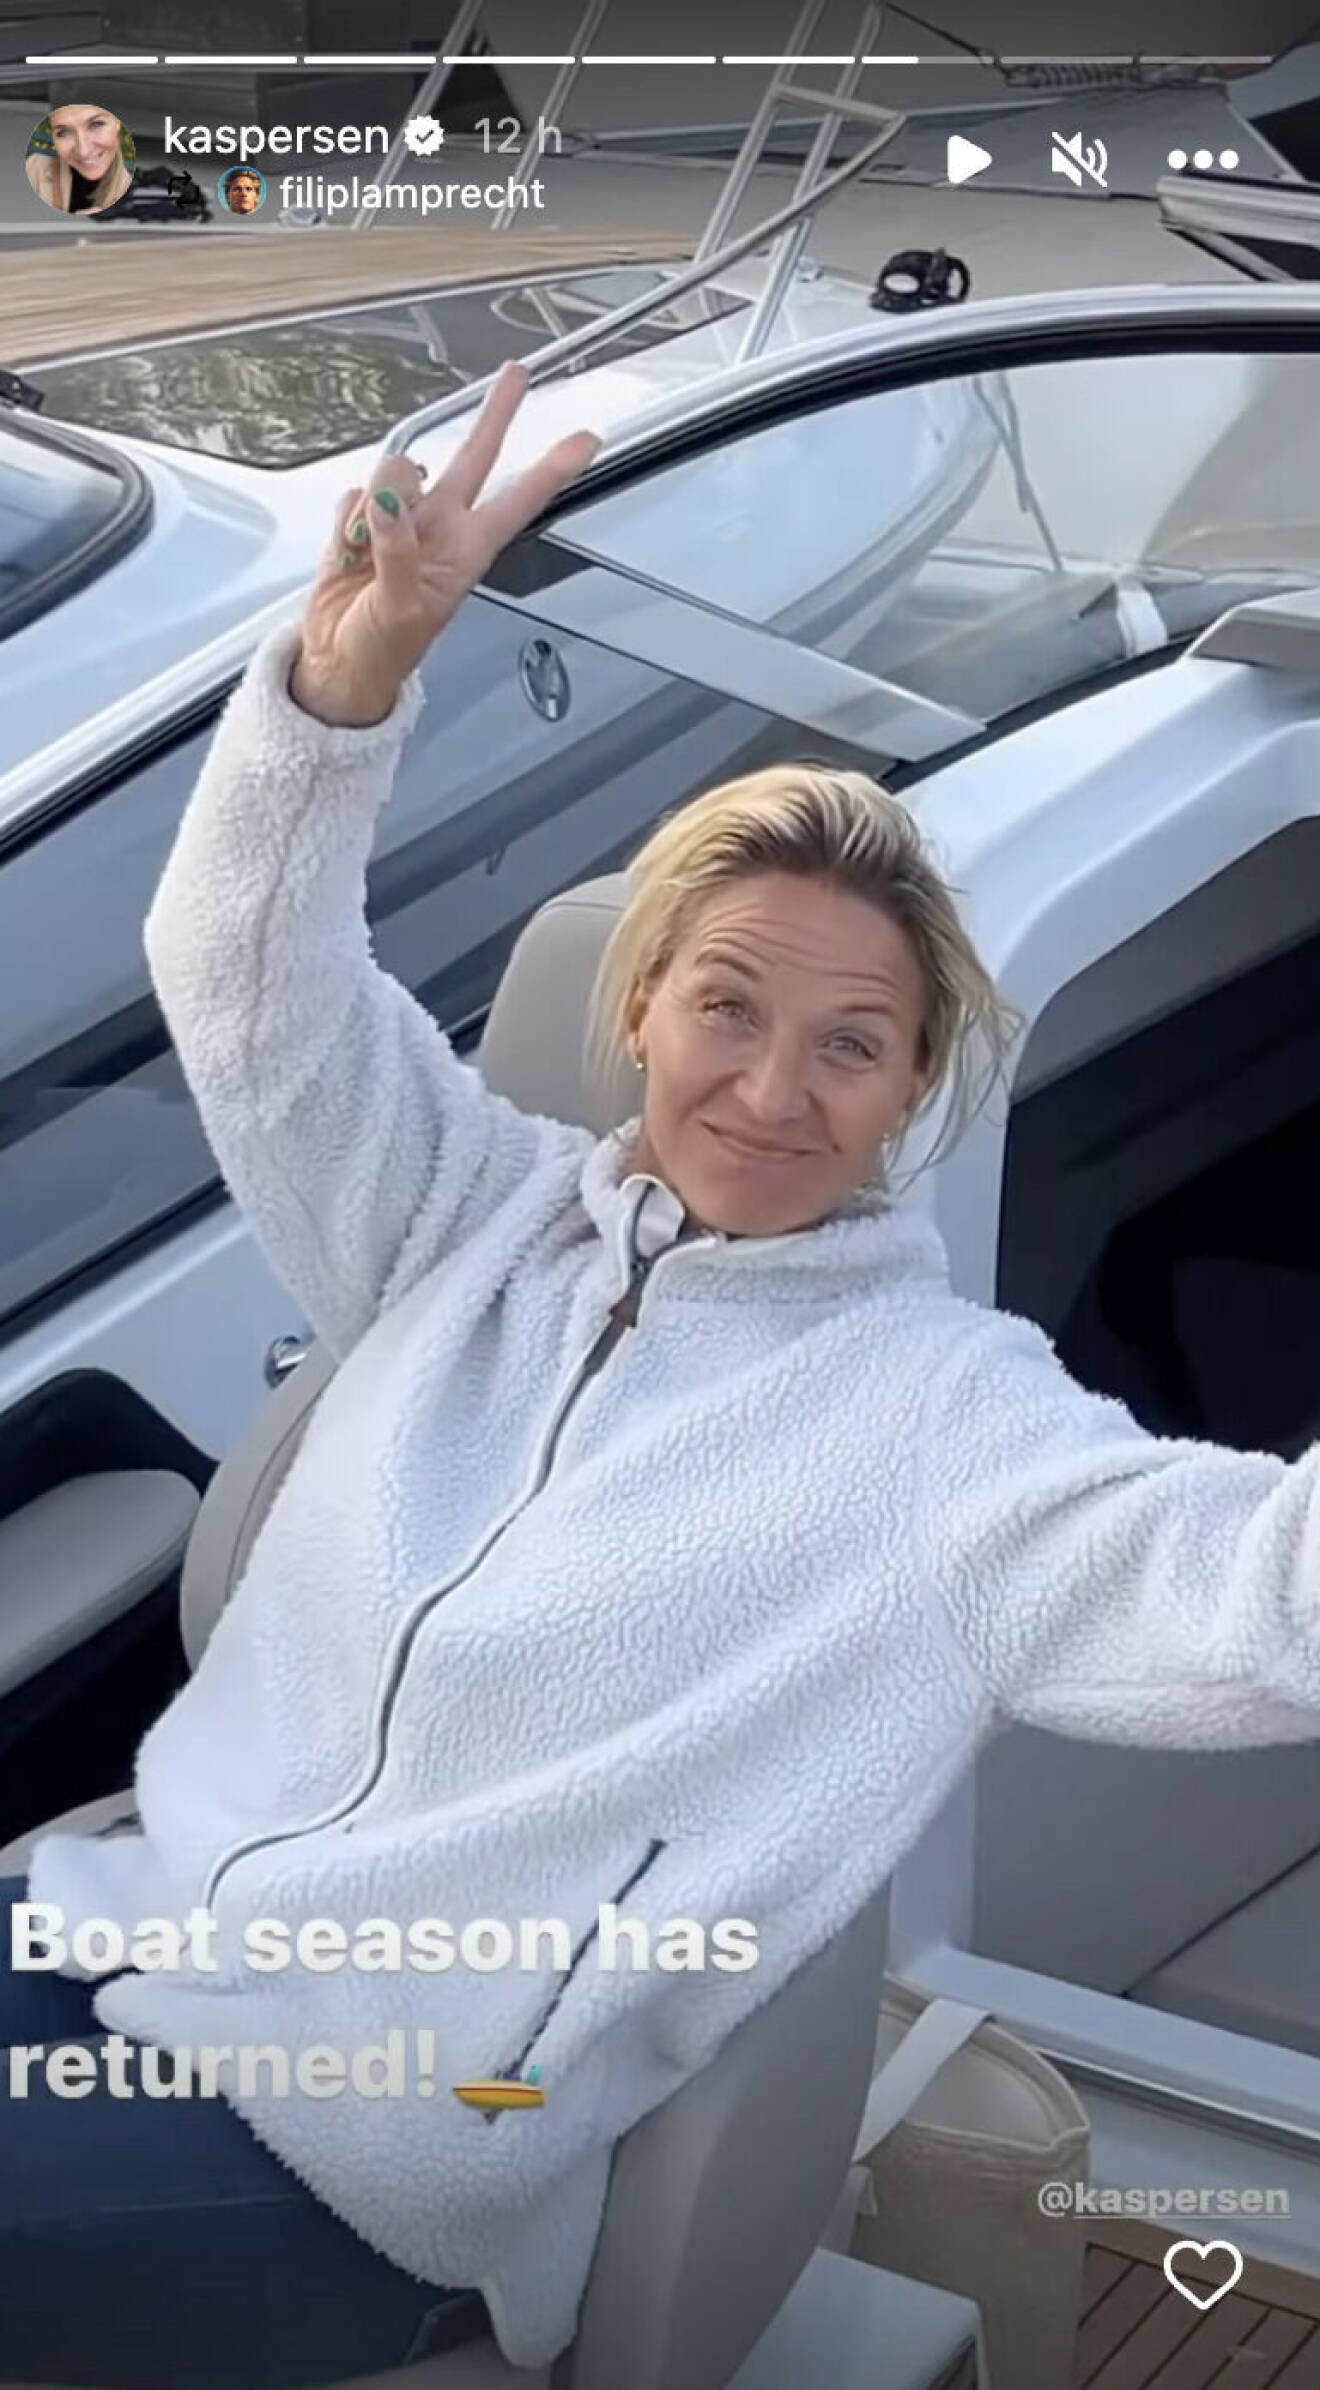 Kristin Kaspersen sitter på sin båt och håller sina fingrar i fredstecken